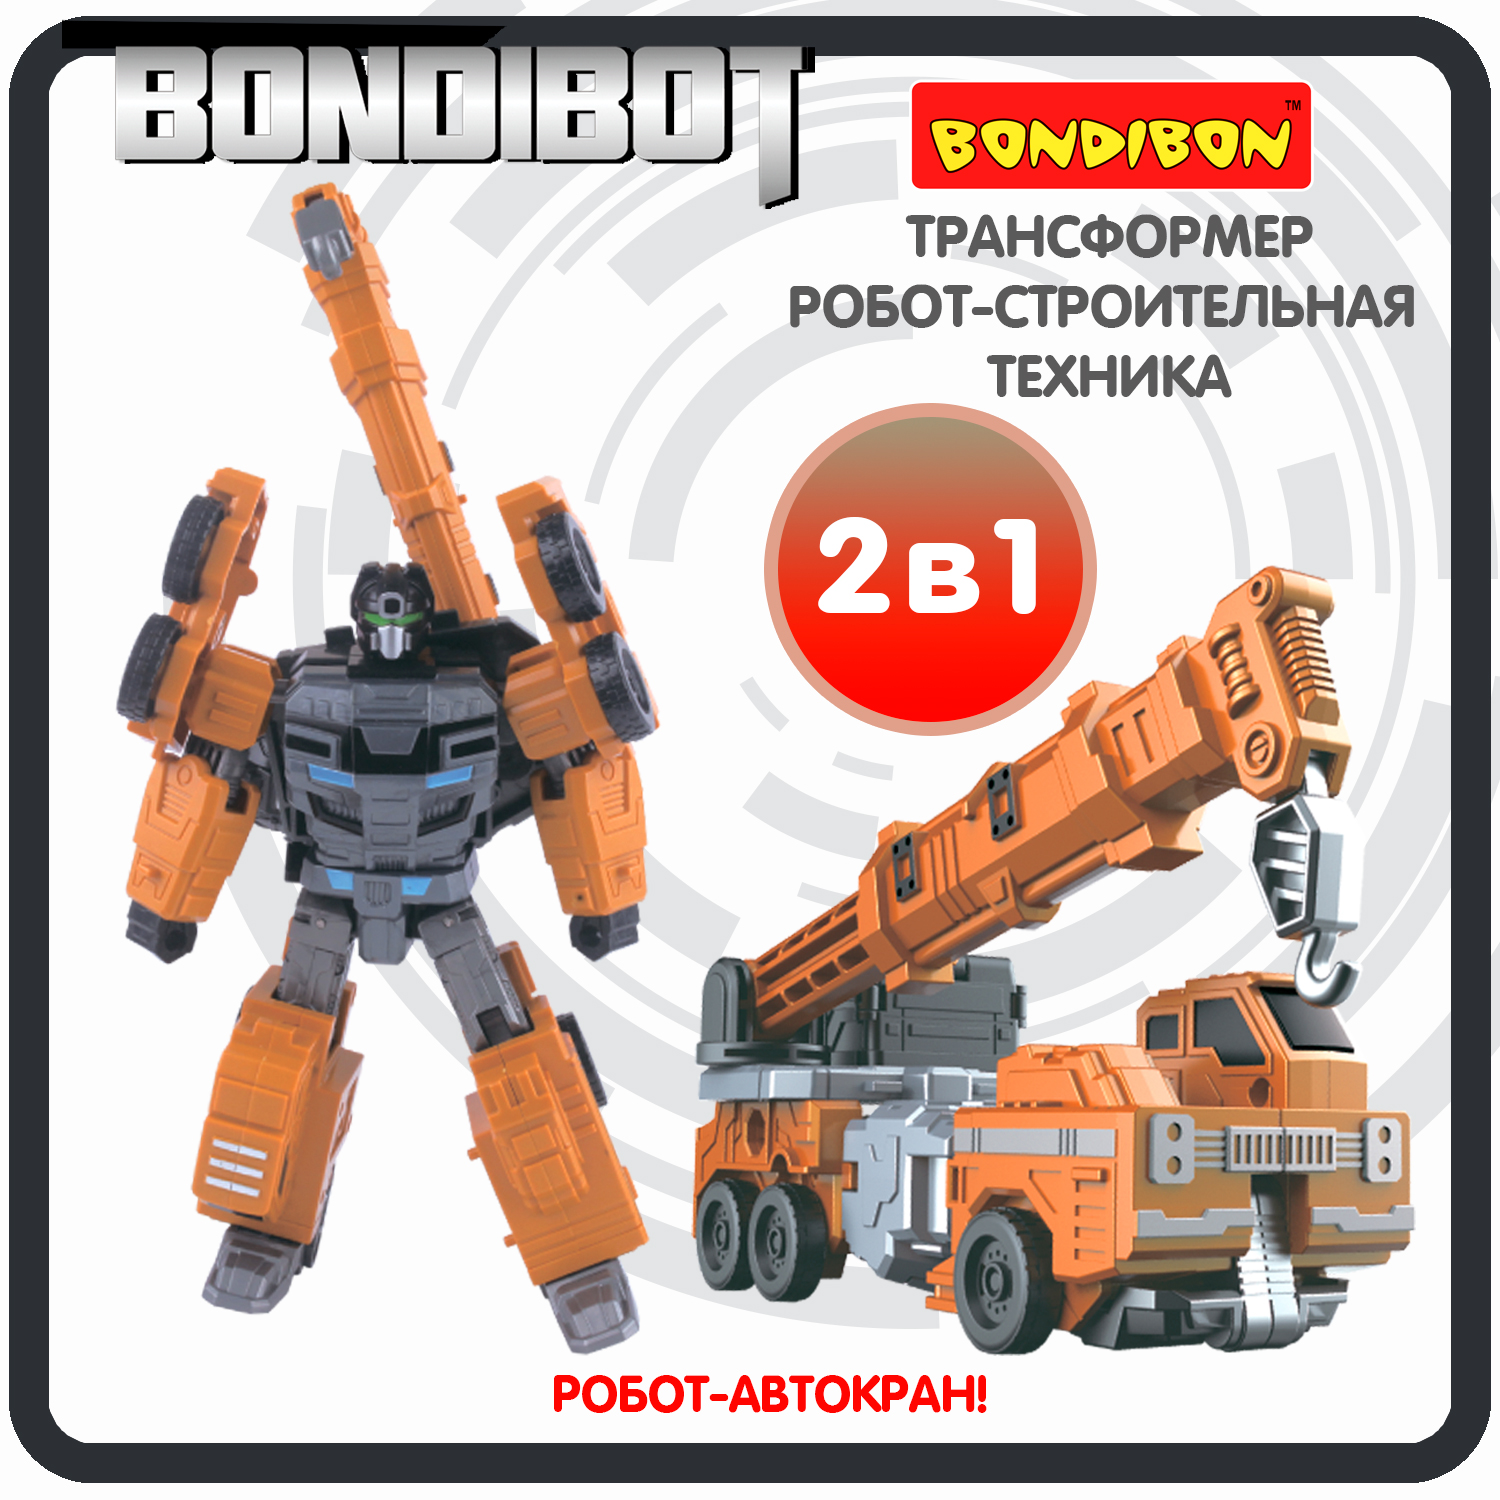 Трансформер робот-строительная техника, 2в1 BONDIBOT Bondibon, автокран / ВВ6056